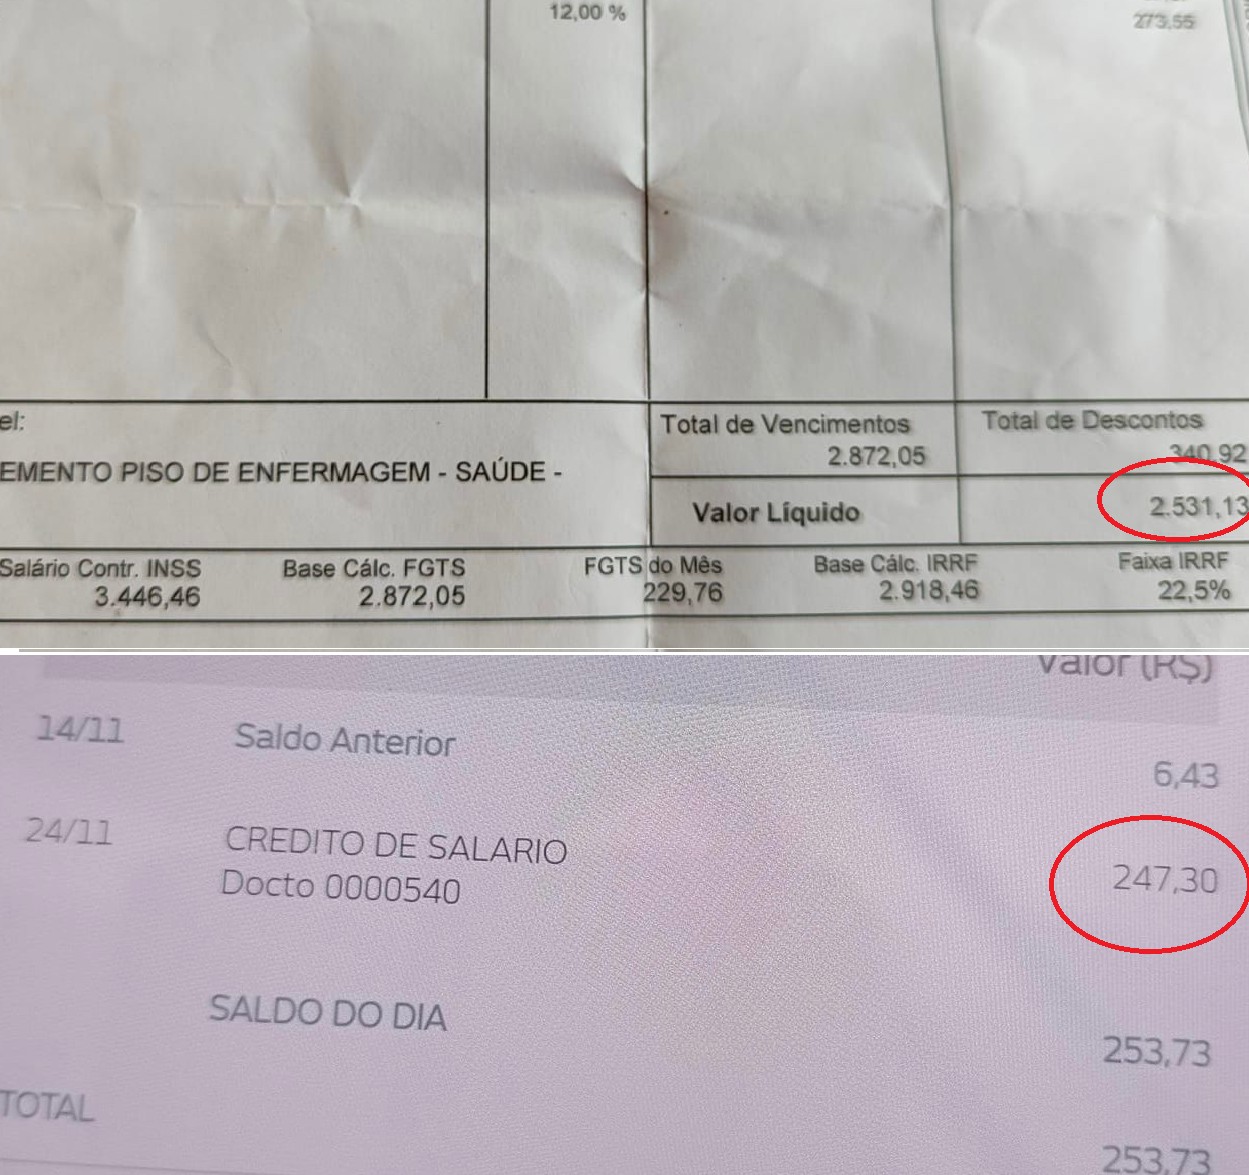 Profissionais da enfermagem de Nova Friburgo se surpreendem com valor em conta 10 vezes menor do previsto em contracheque